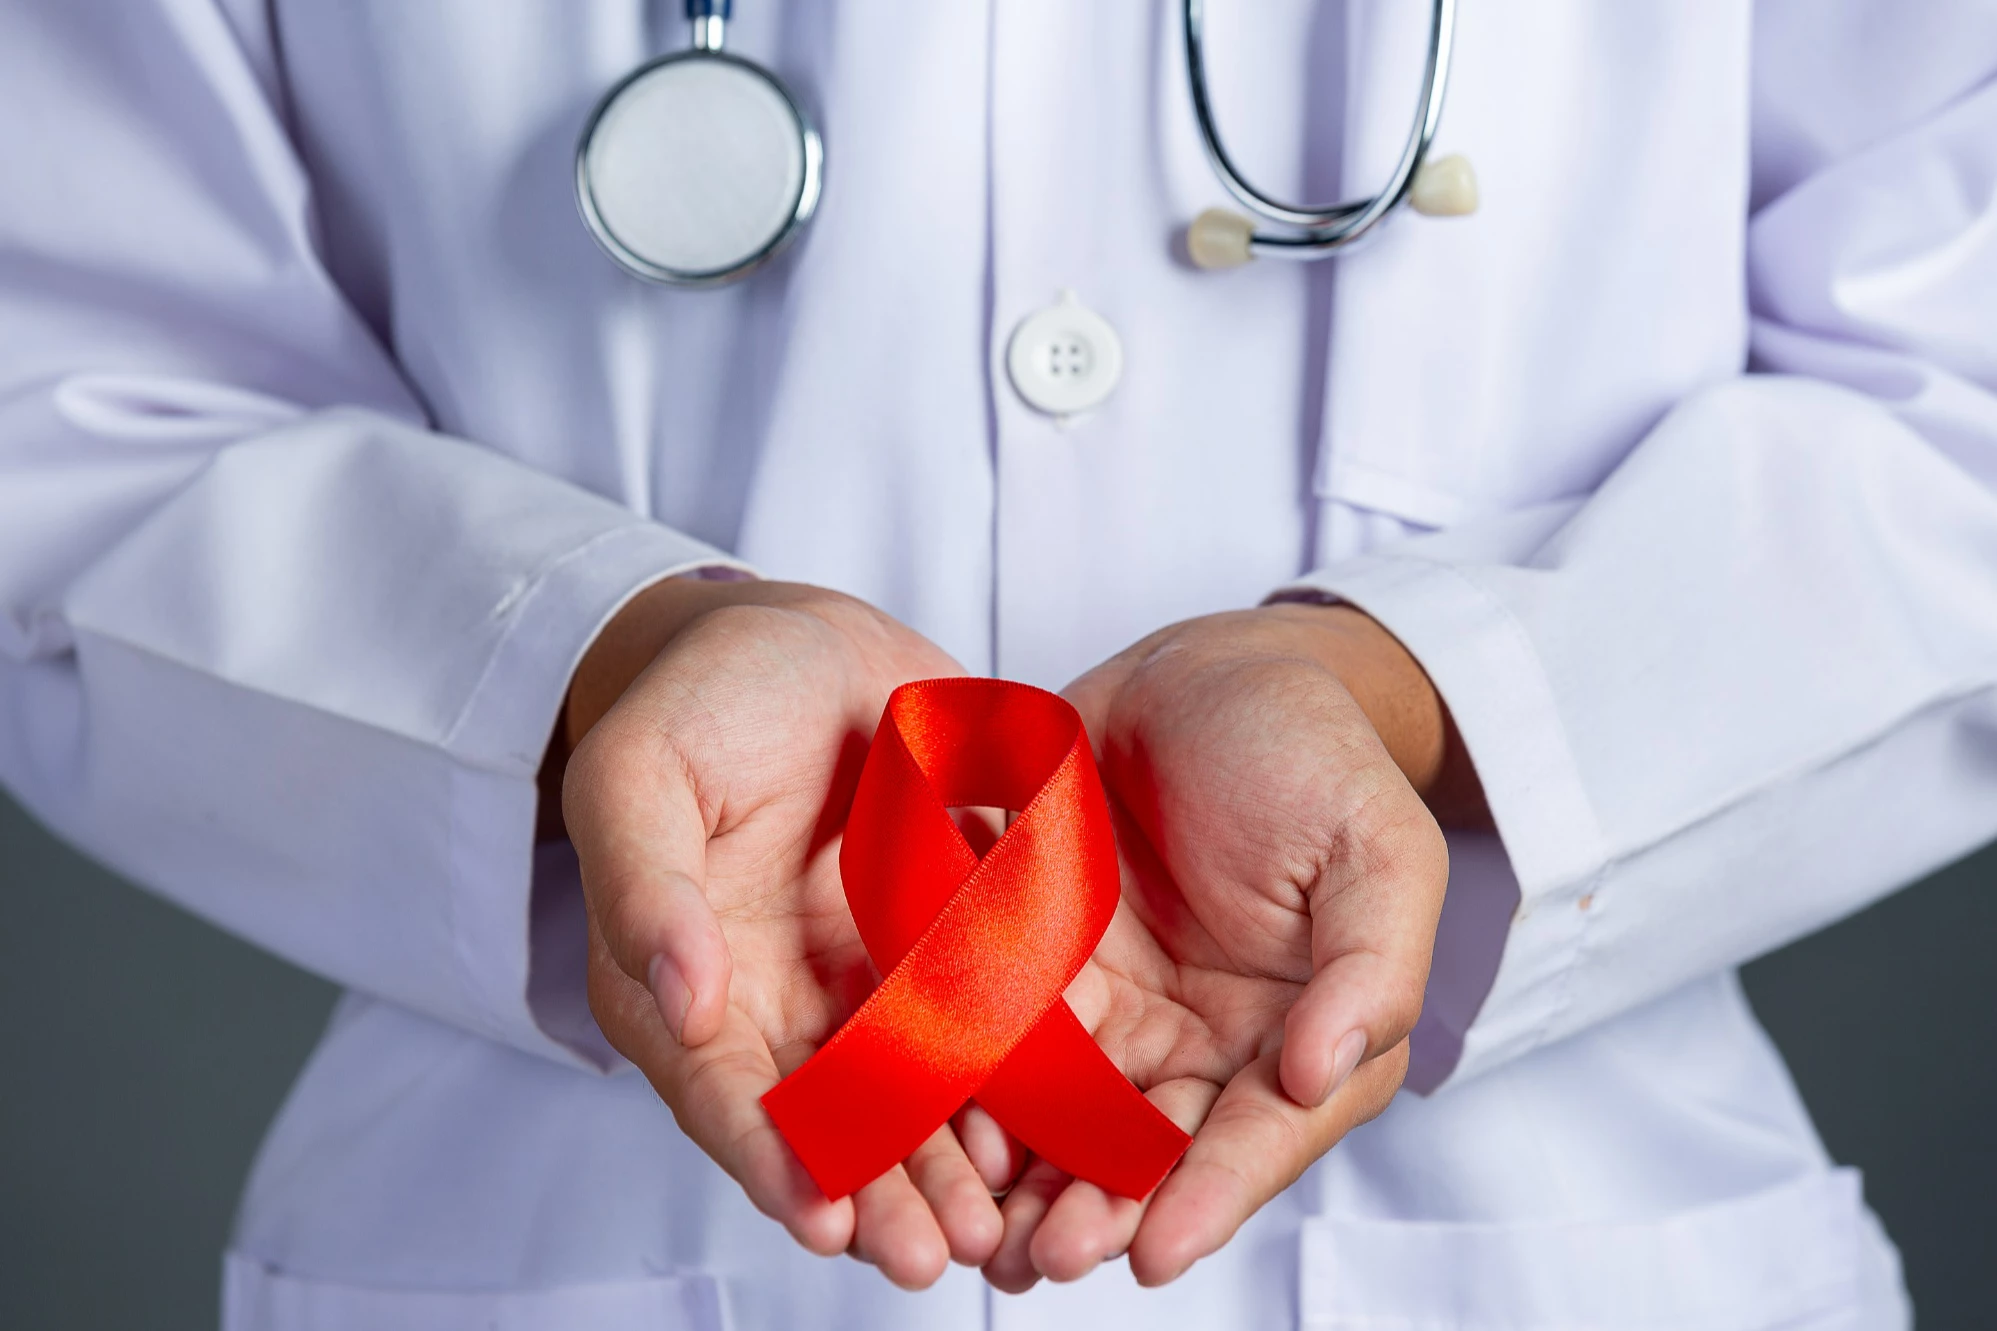 40 metų ŽIV sirgęs vyras pasveiko: tai ketvirtas atvejis pasaulyje